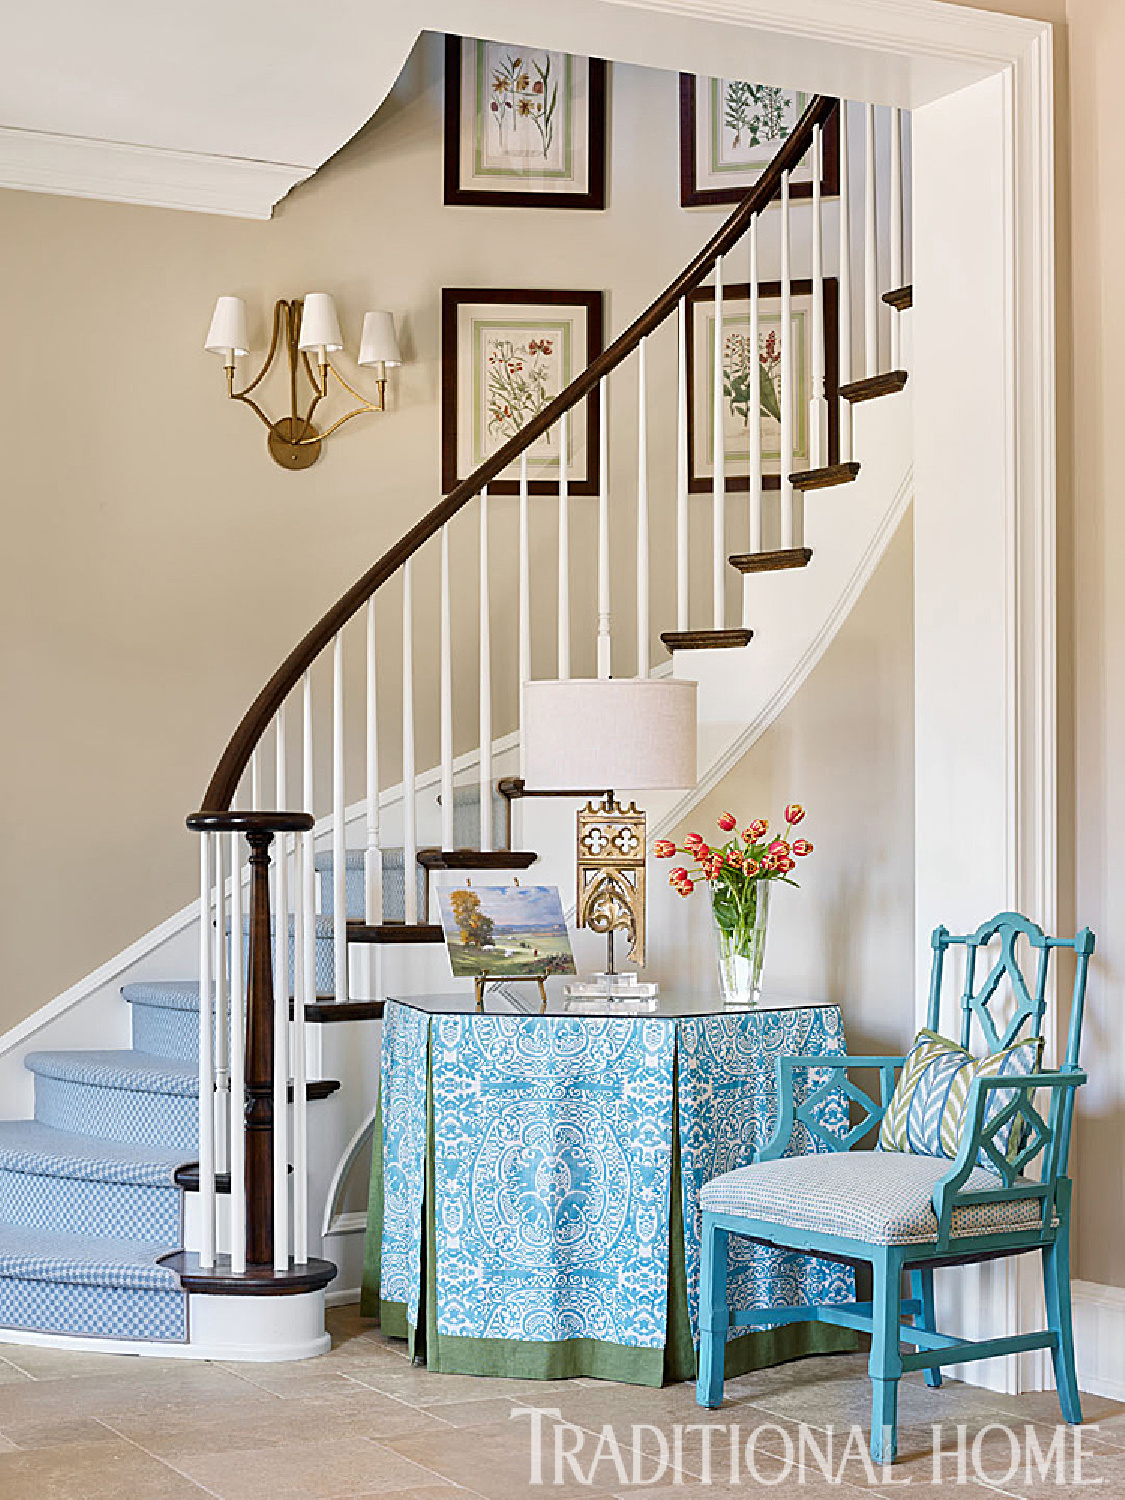 Table à jupe turquoise et accents dans une entrée traditionnelle avec escalier sculptural-Maison traditionnelle. #turquoise # foyers